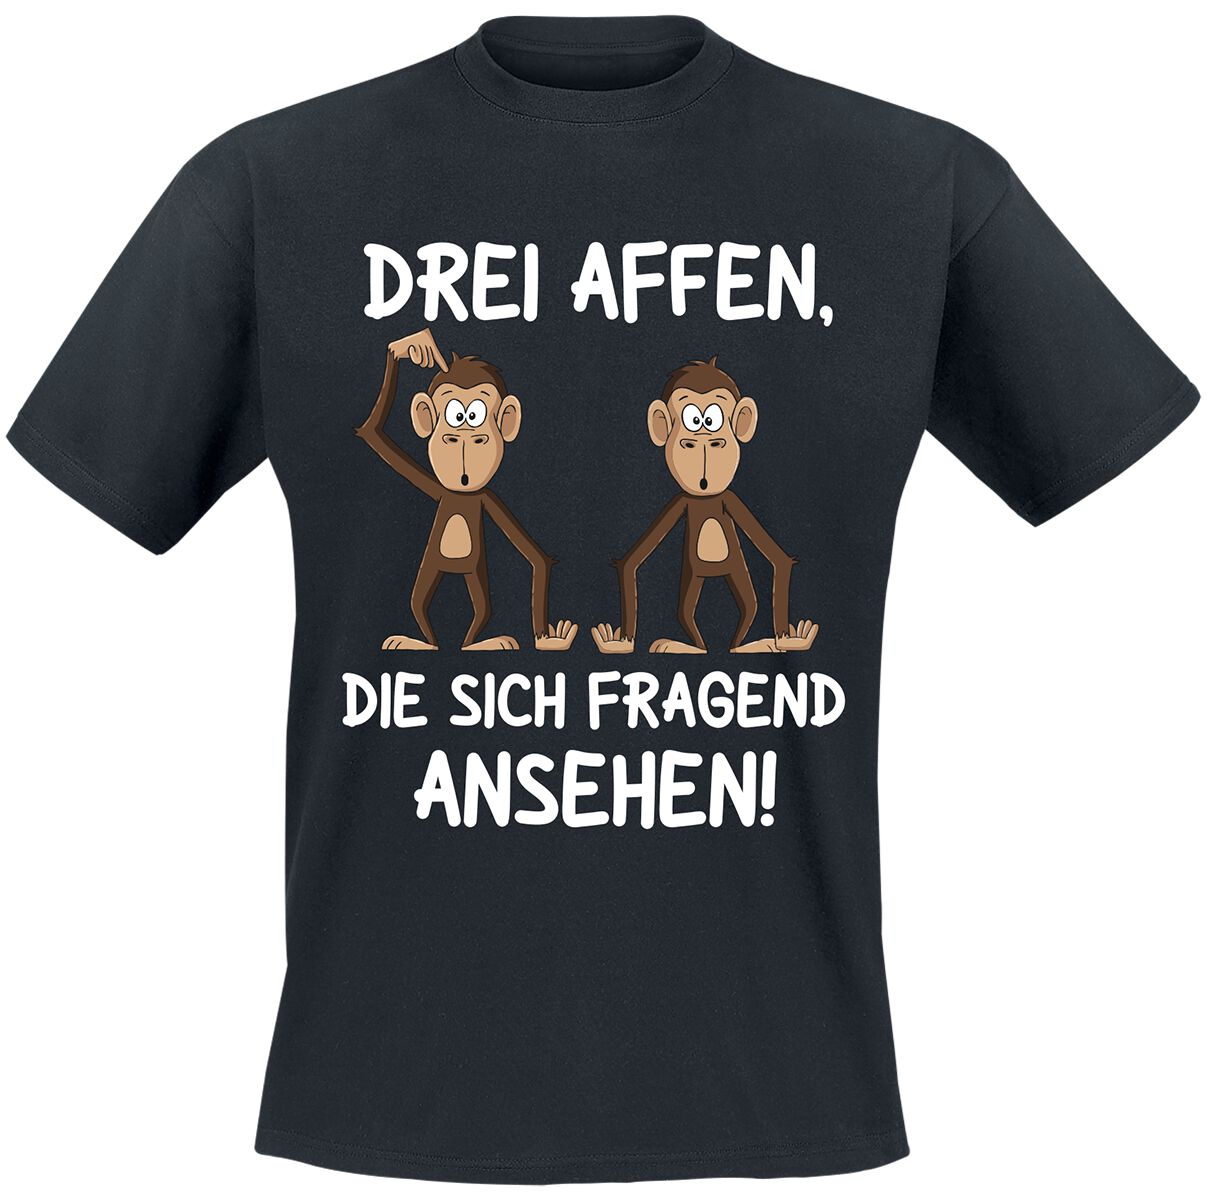 Tierisch T-Shirt - Drei Affen, die sich fragend ansehen! - M bis 4XL - für Männer - Größe XXL - schwarz